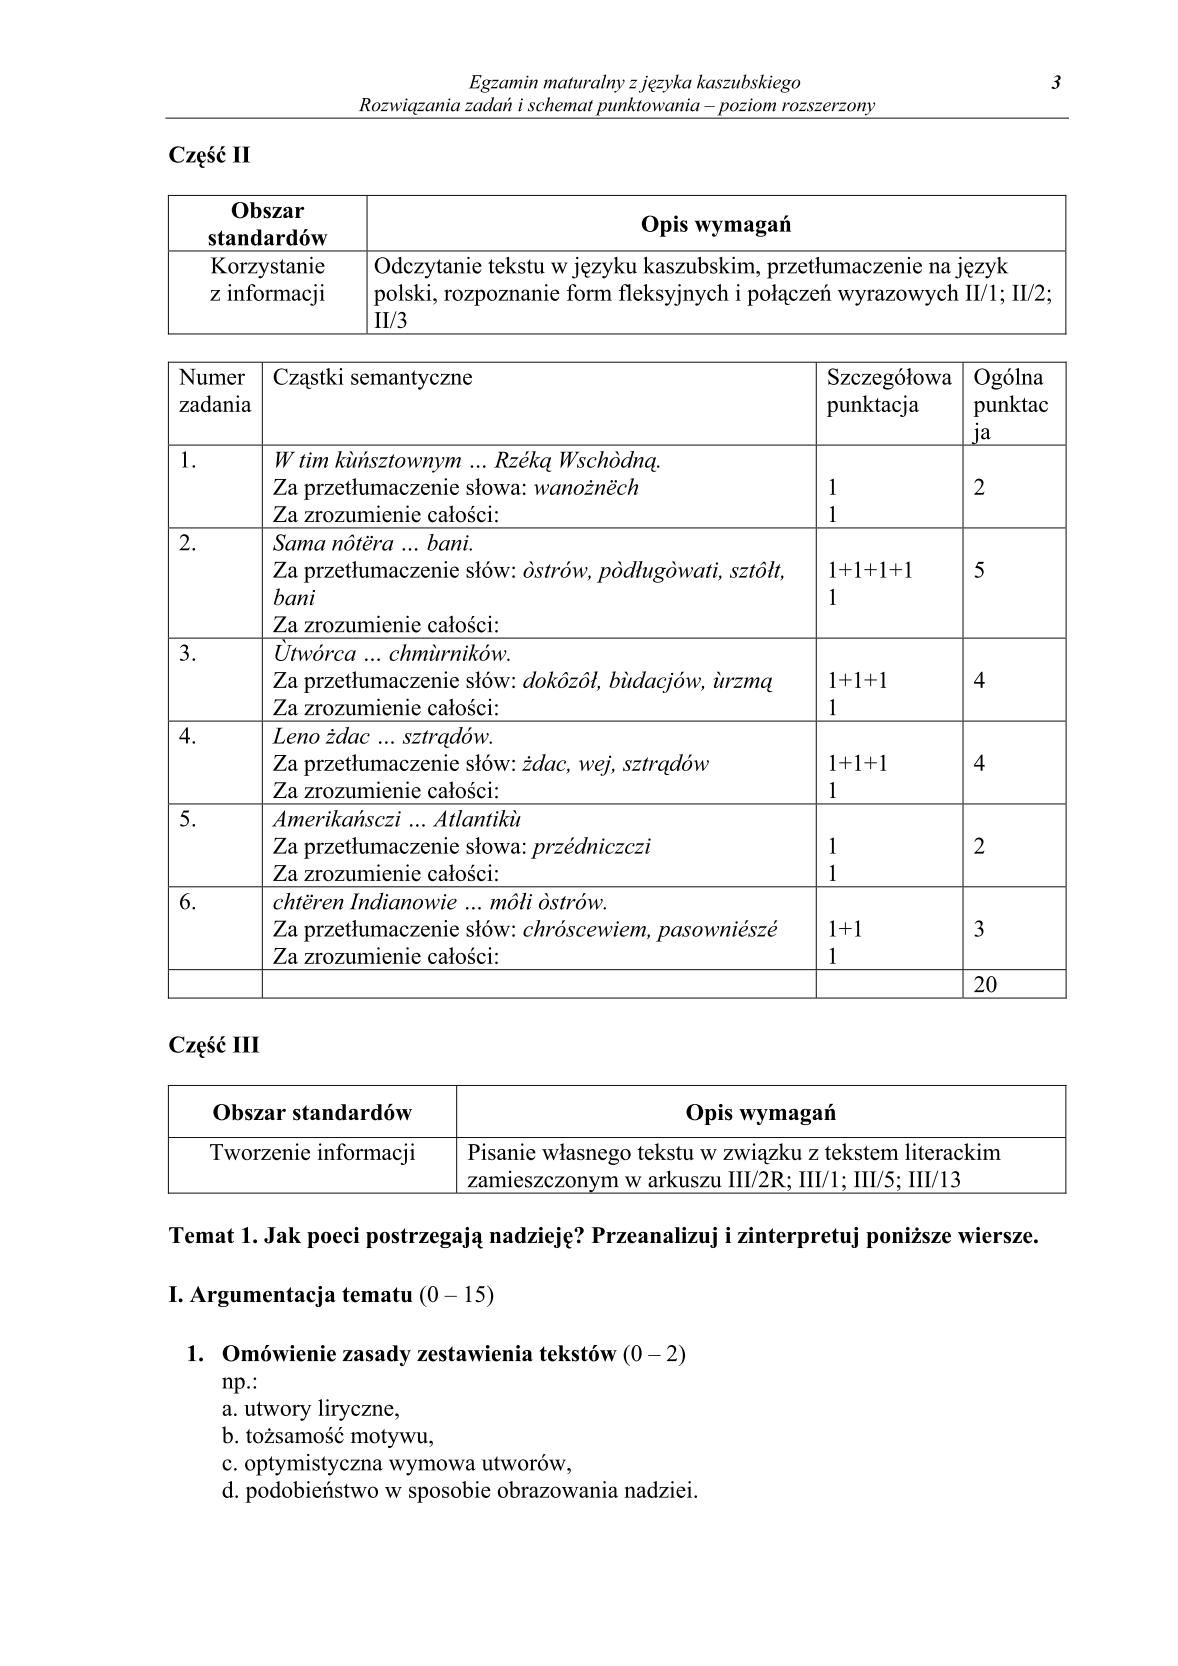 odpowiedzi-jezyk-kaszubski-poziom-rozszerzony-matura-2014-str.3